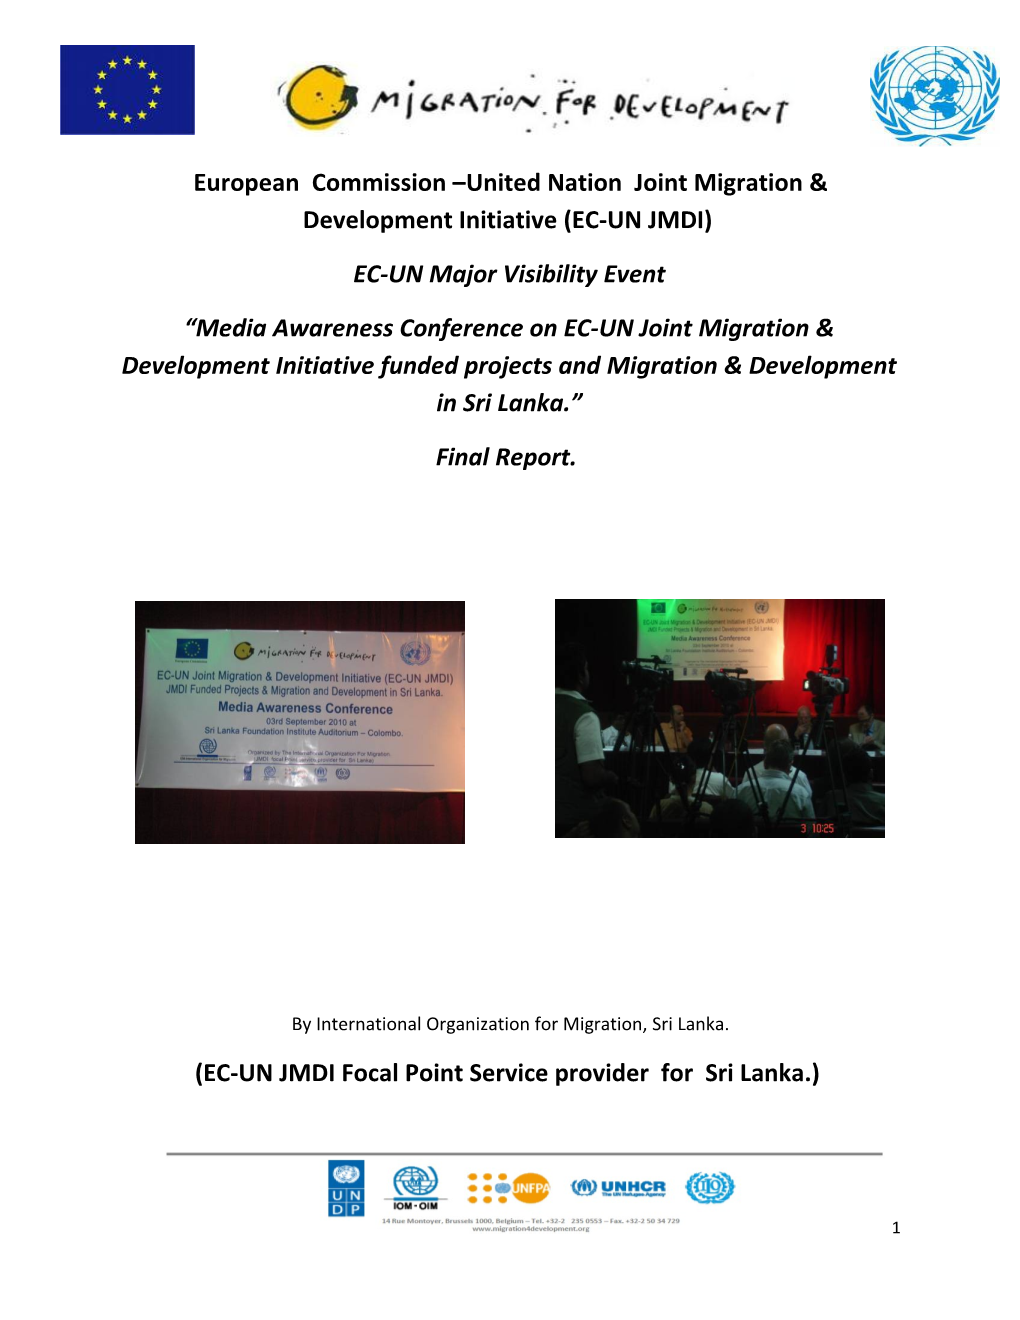 European Commission Unitednation Joint Migration & Development Initiative (EC-UN JMDI)